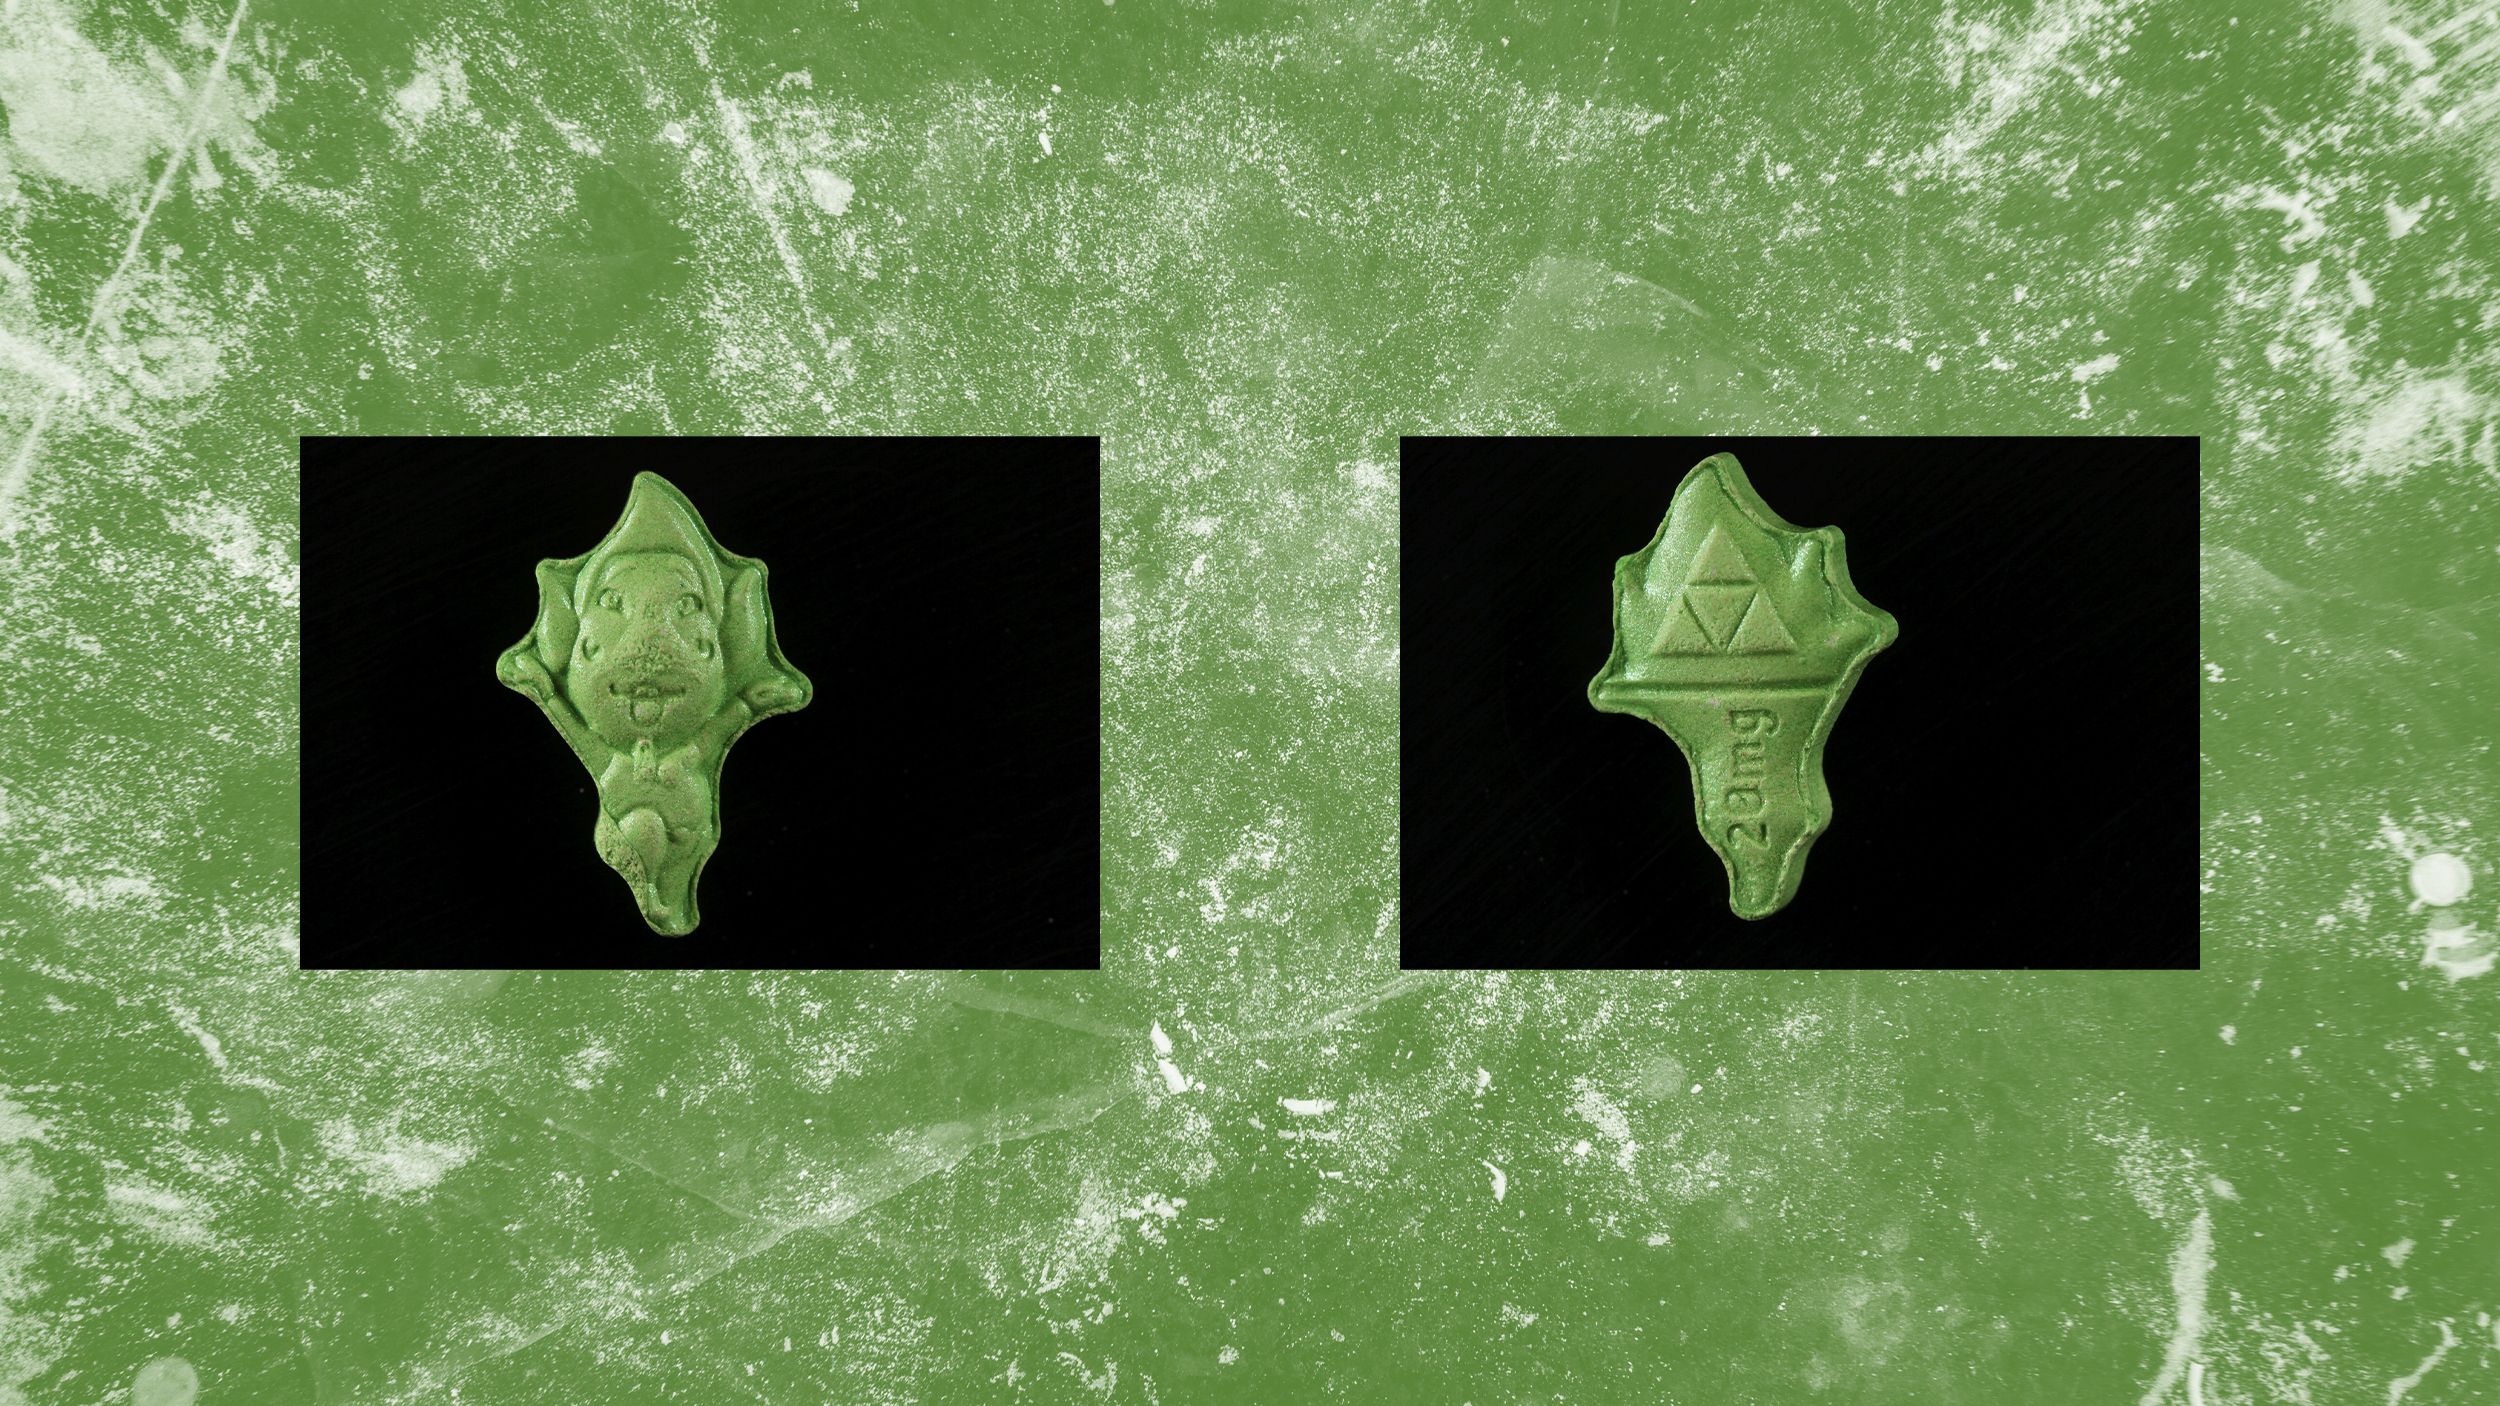 Eine grüne Pille in Form eines Männchens auf grünen Hintergrund